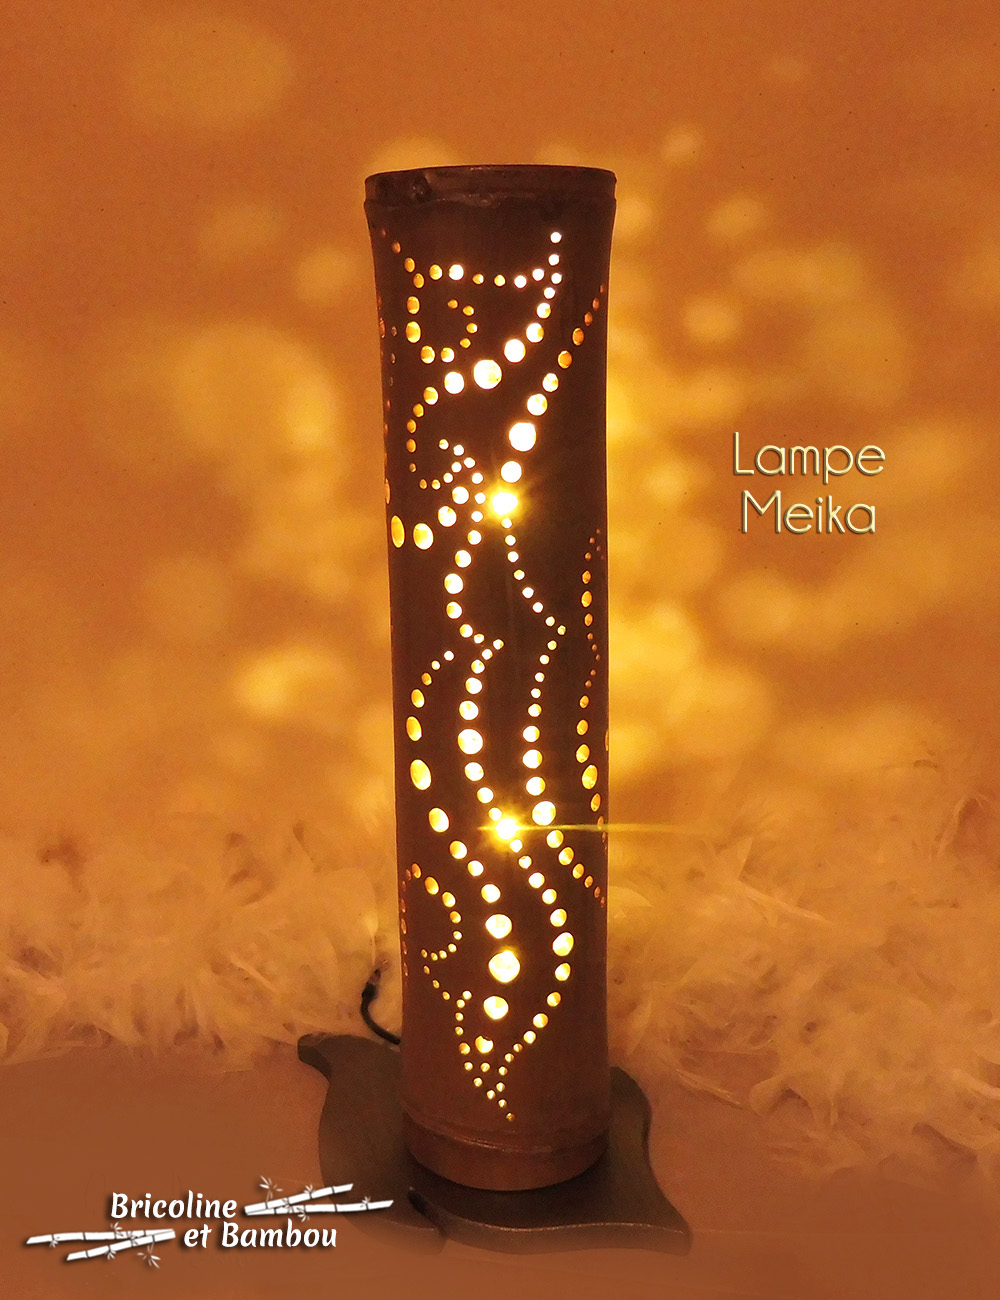 Lampe bambou Meika 2